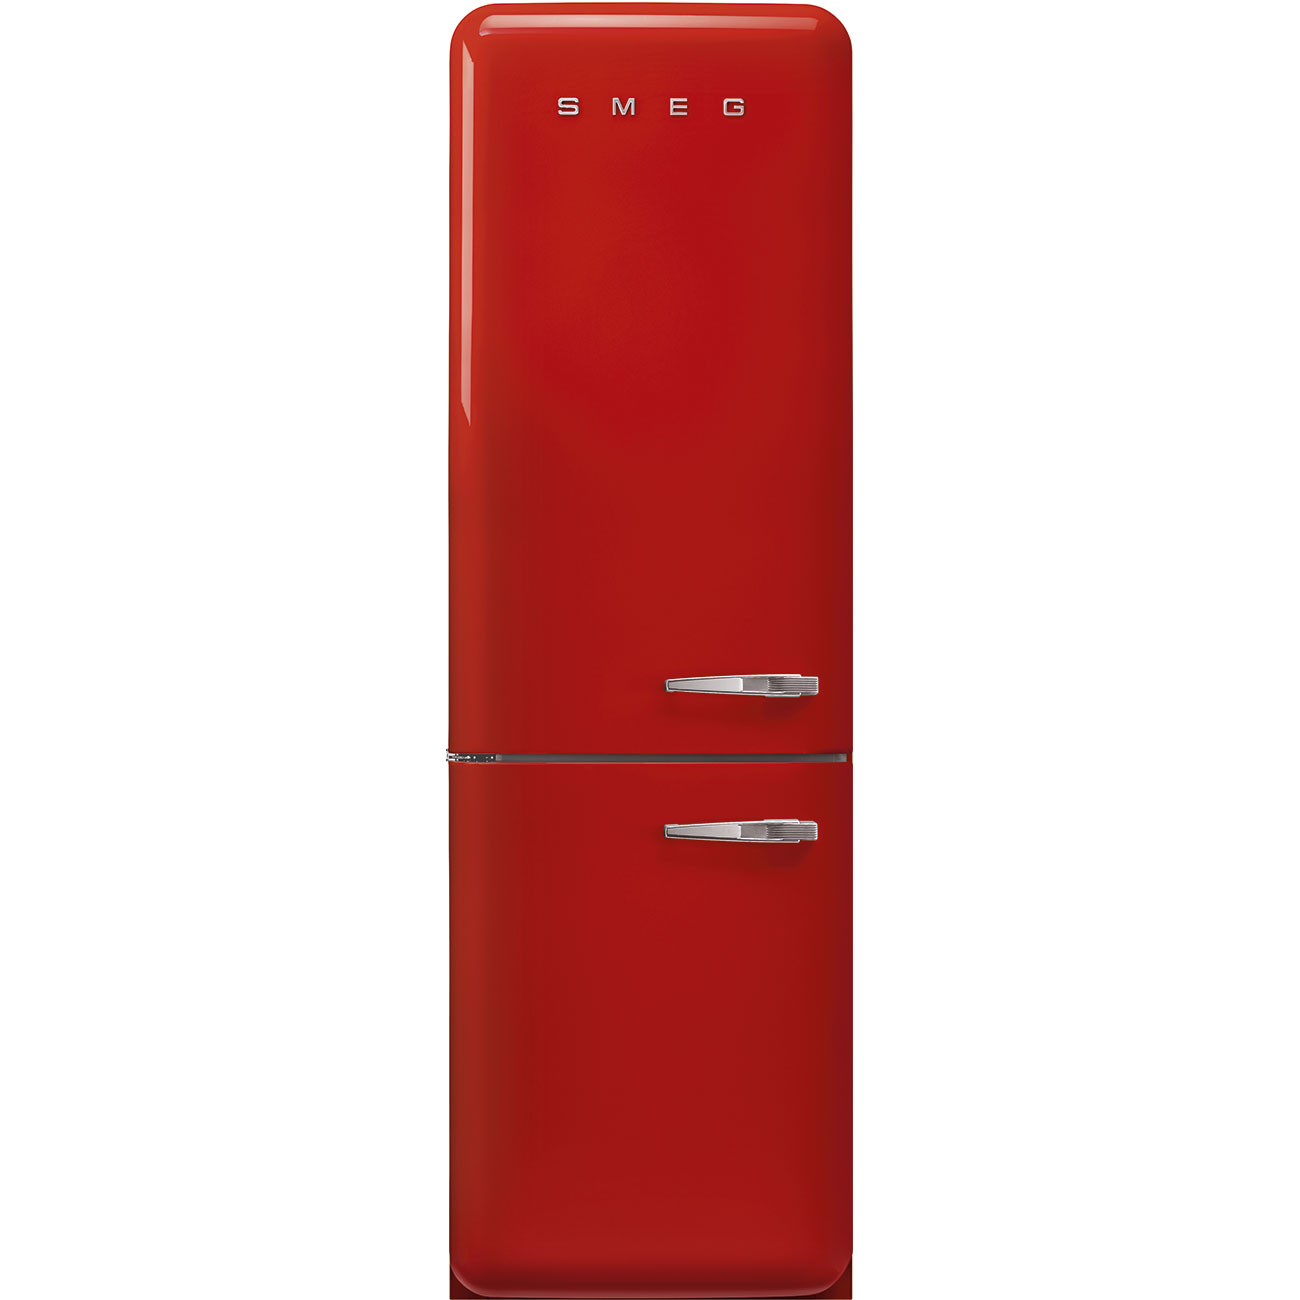 Rood koelkast - Smeg_1